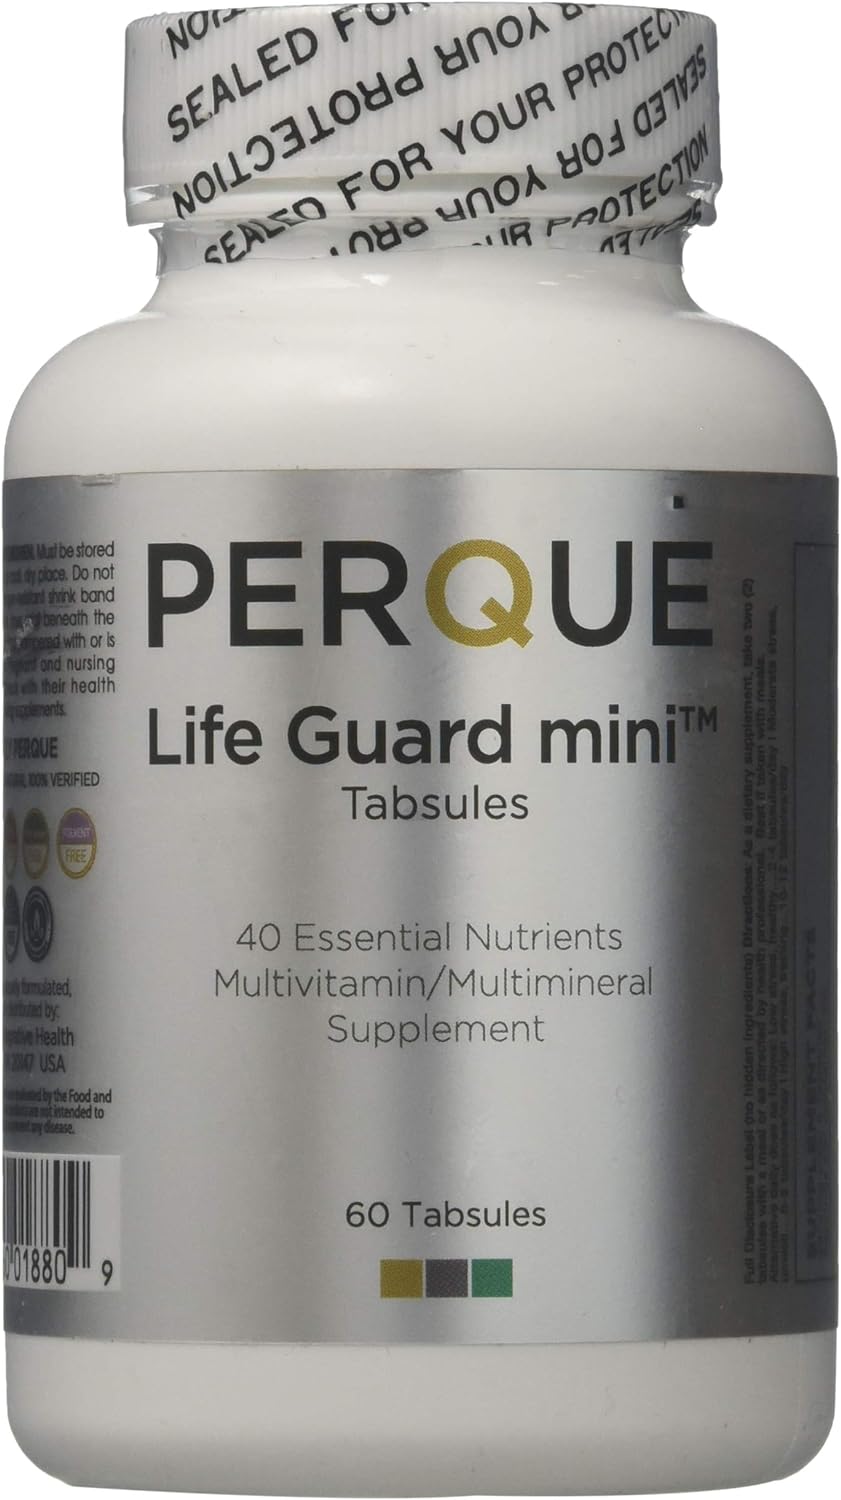 Perque Life Guard Mini Tabsules, 60 Count